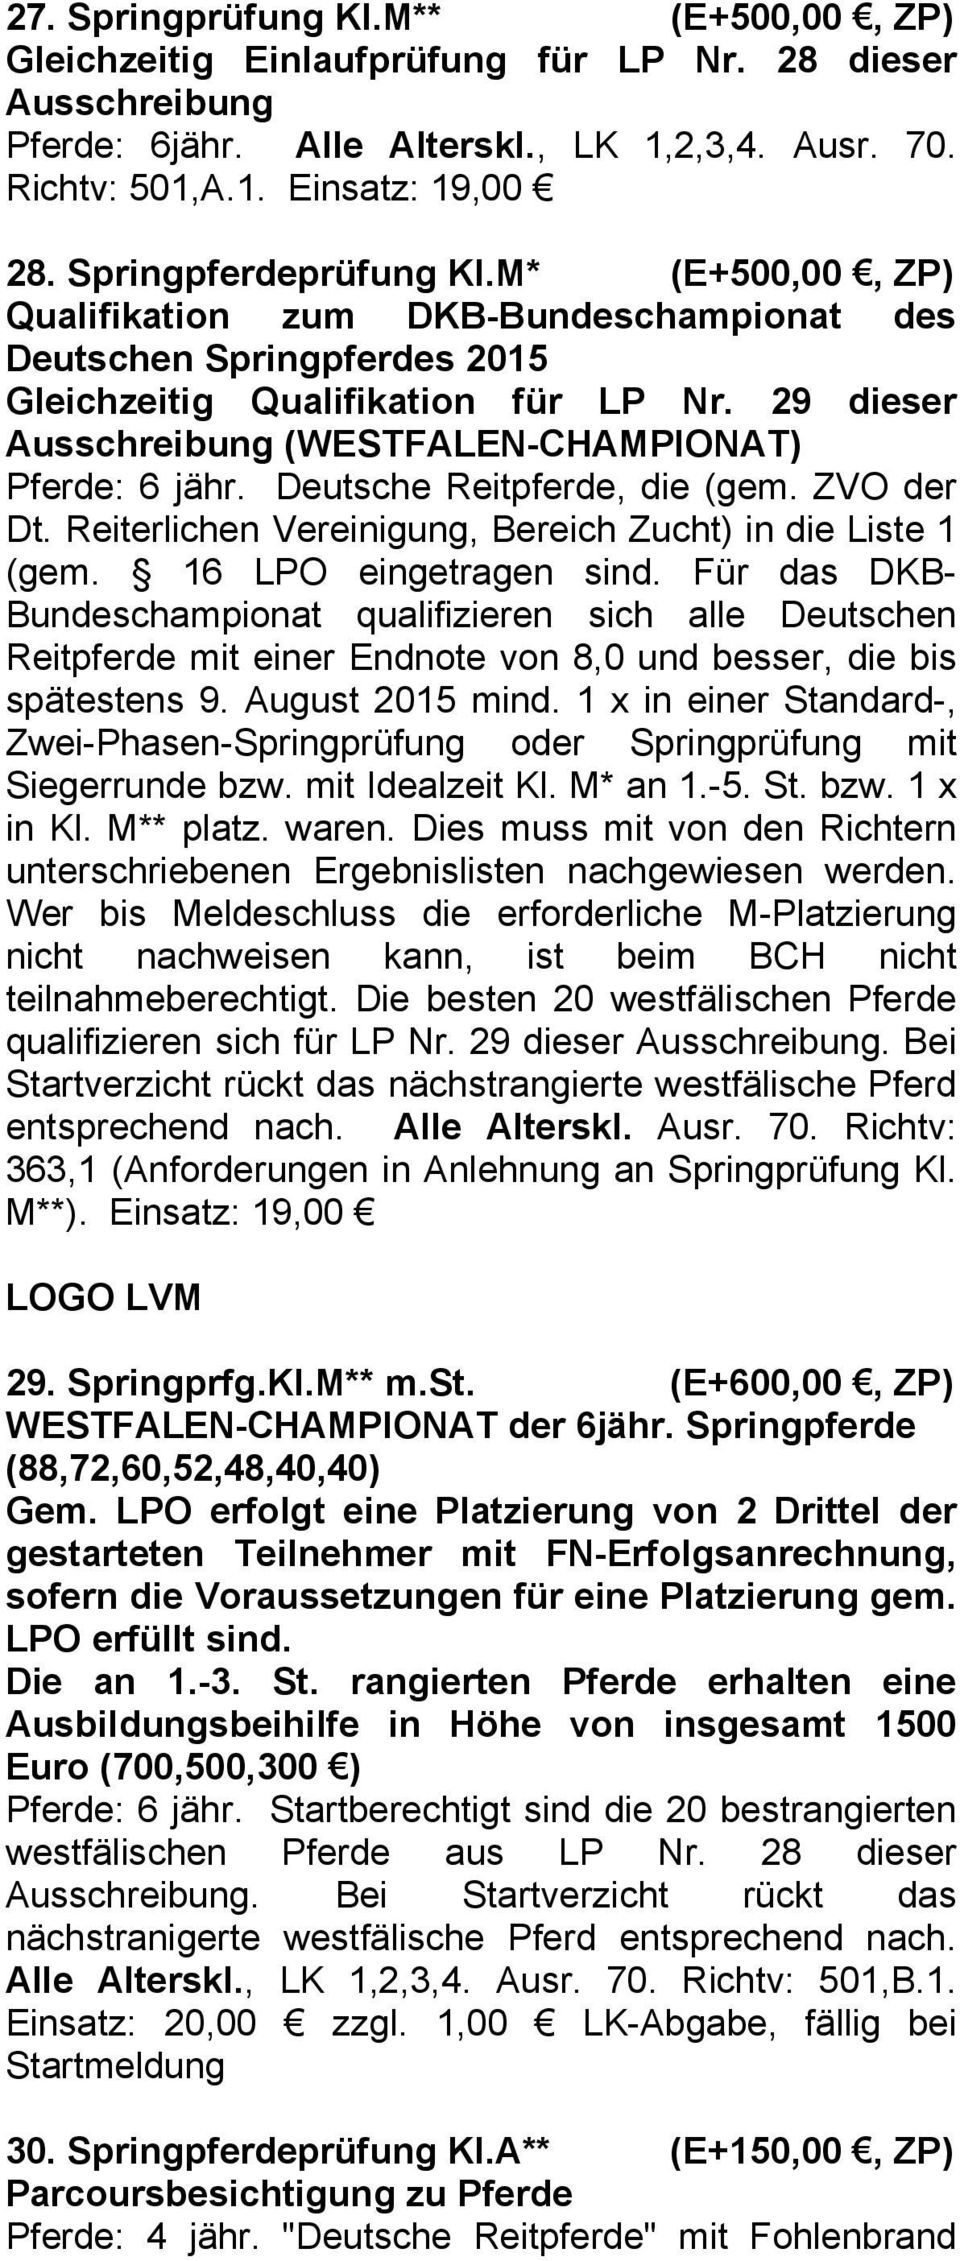 Deutsche Reitpferde, die (gem. ZVO der Dt. Reiterlichen Vereinigung, Bereich Zucht) in die Liste 1 (gem. 16 LPO eingetragen sind.